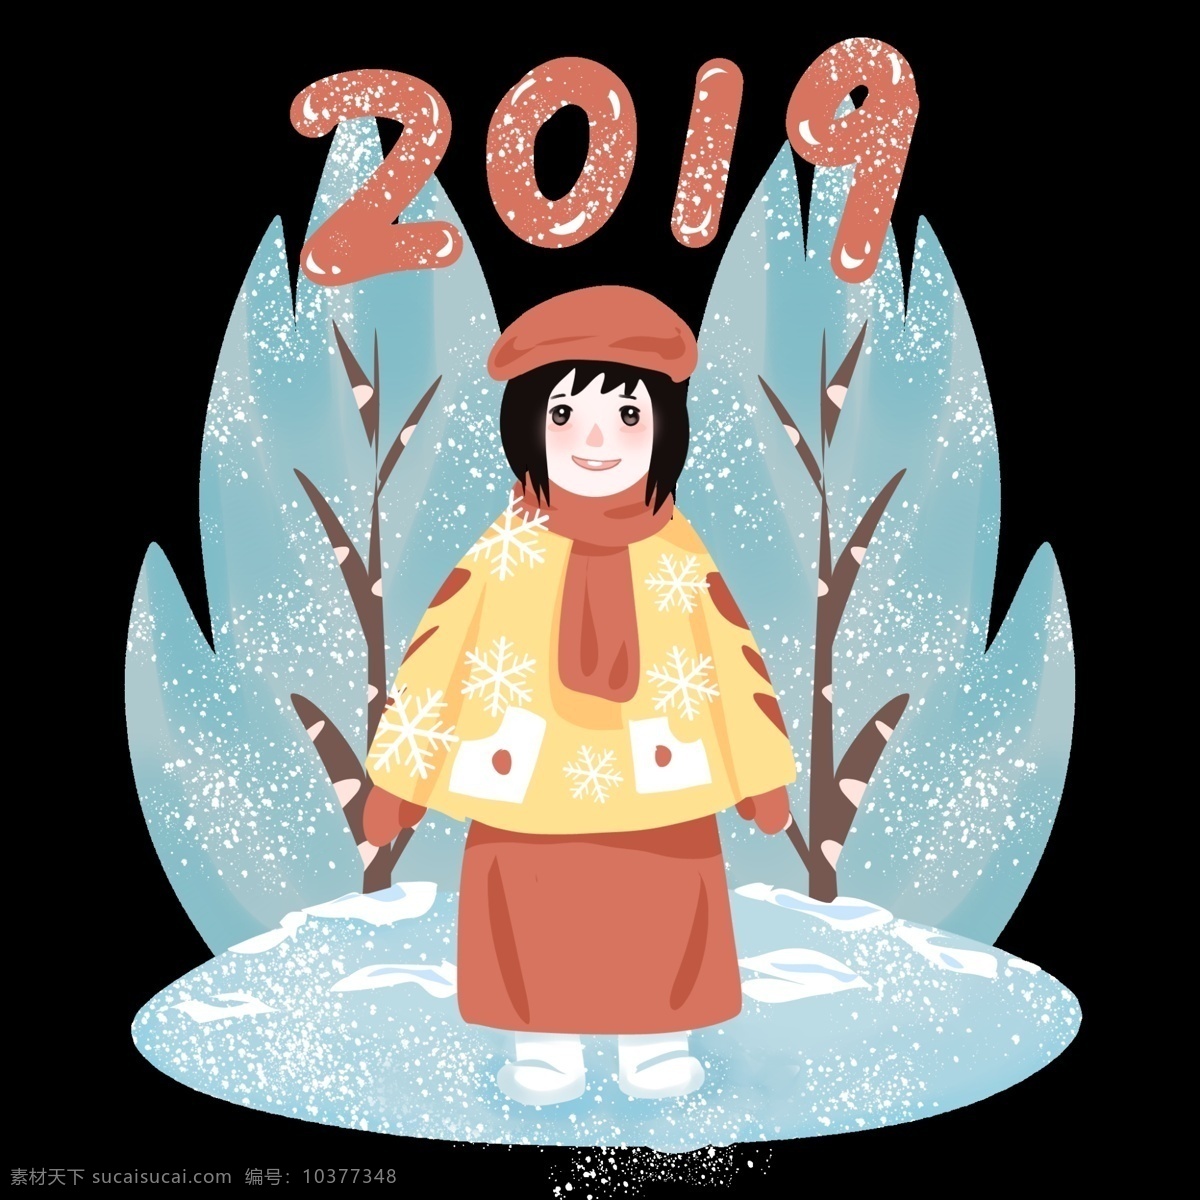 冰雪 外景 冰天雪地 新年快乐 手绘卡通人物 儿童插画 简约风格 可爱 猪年 2019 农历 新年 冰雪外景